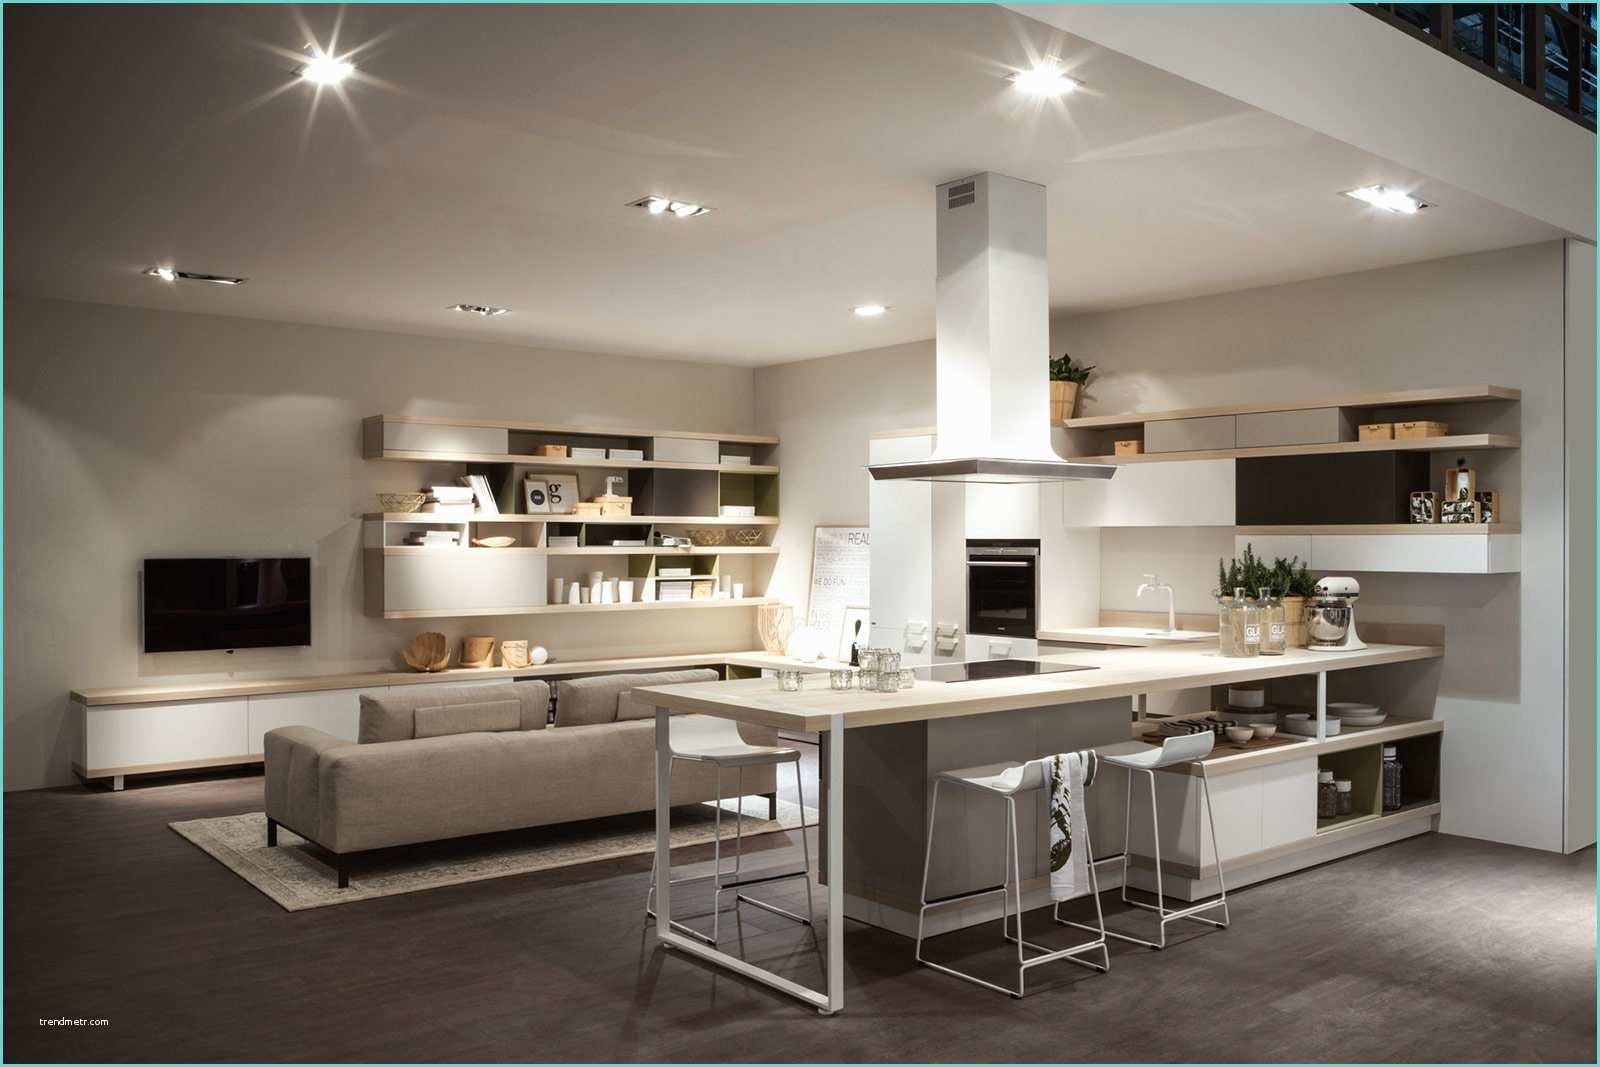 Ikea Cose Per La Casa Cucina E soggiorno Openspace Funzioni Divise O Spiccata